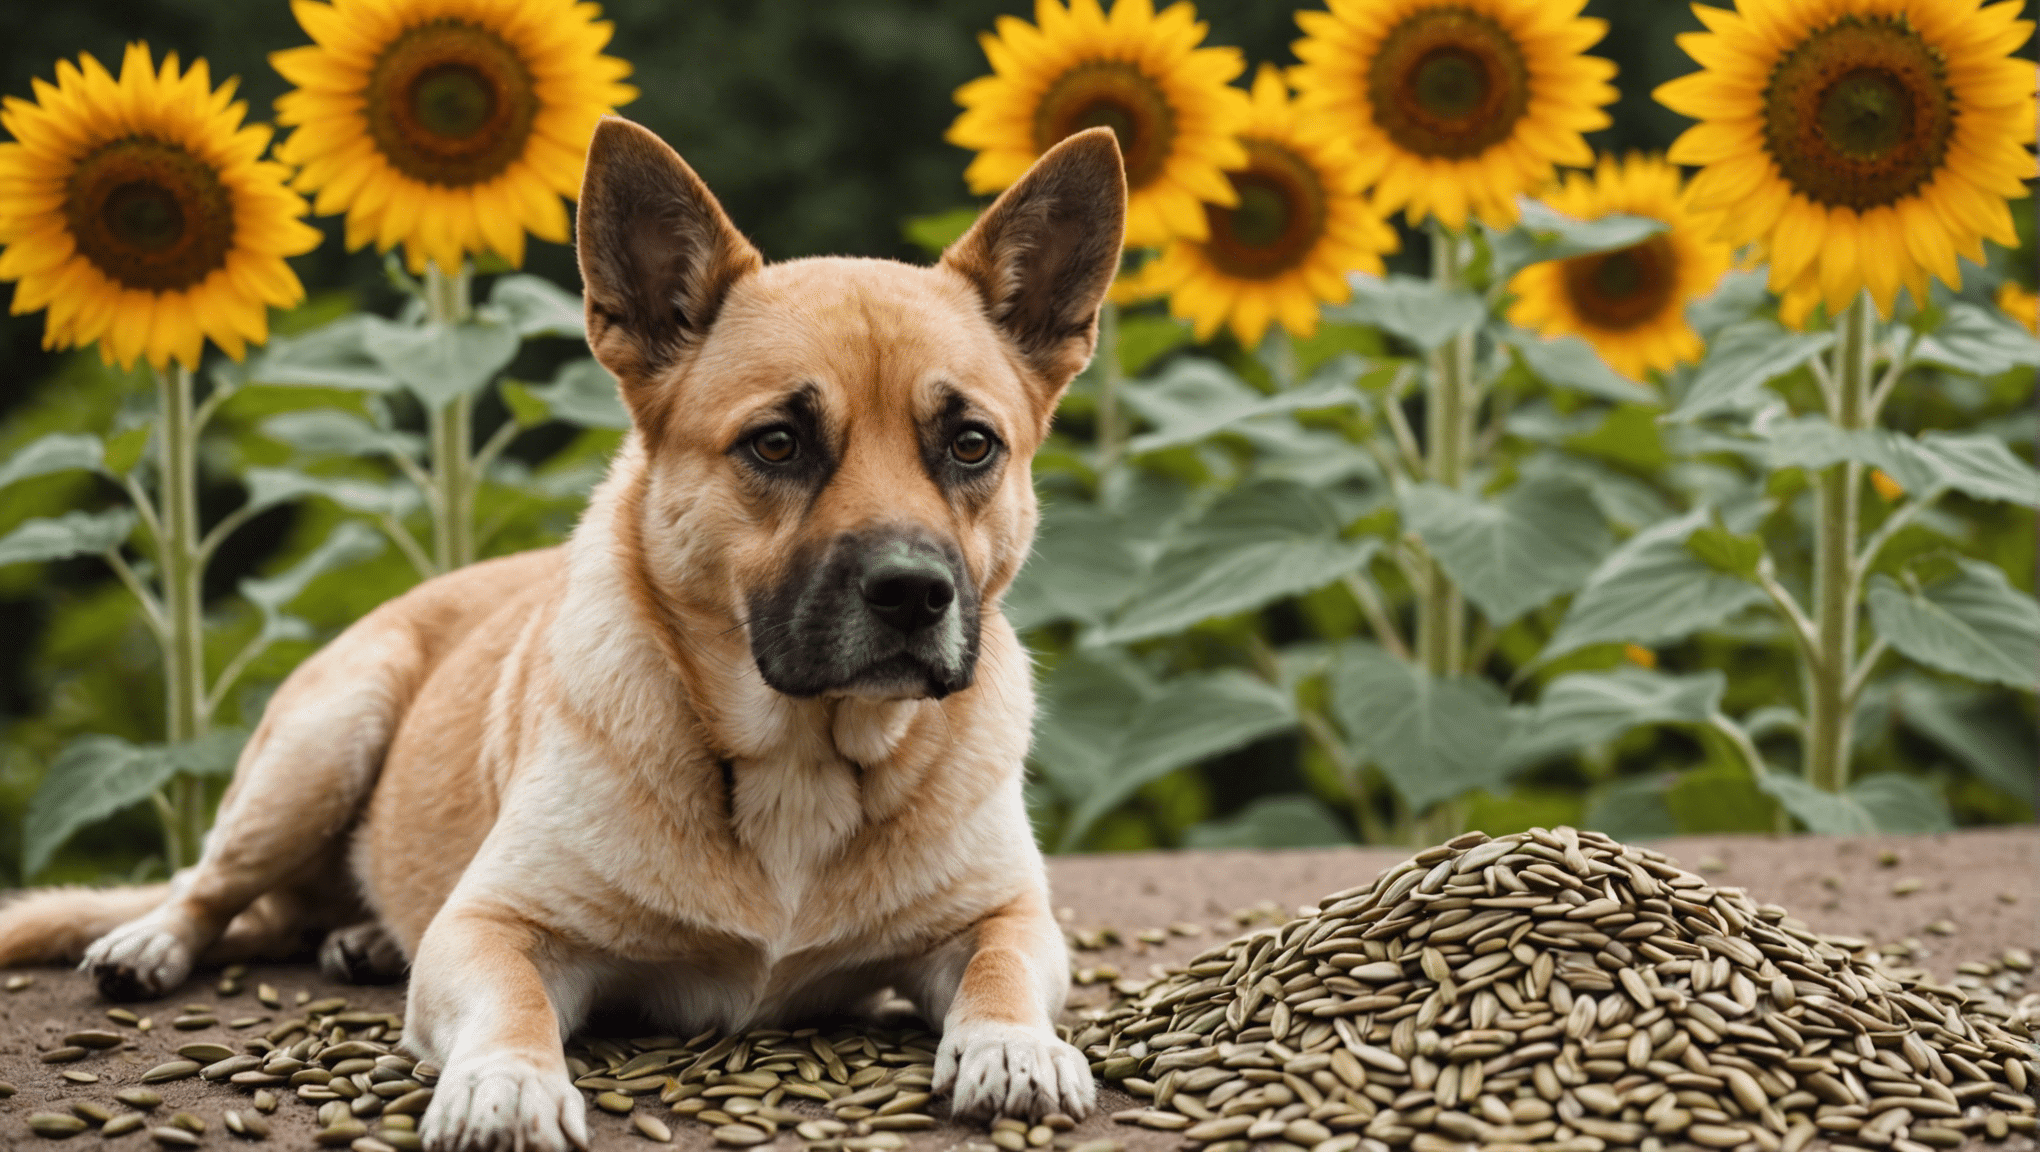 upptäck om solrosfrön är säkra för hundar att äta och lär dig om potentiella risker och fördelar för din hundkamrat.